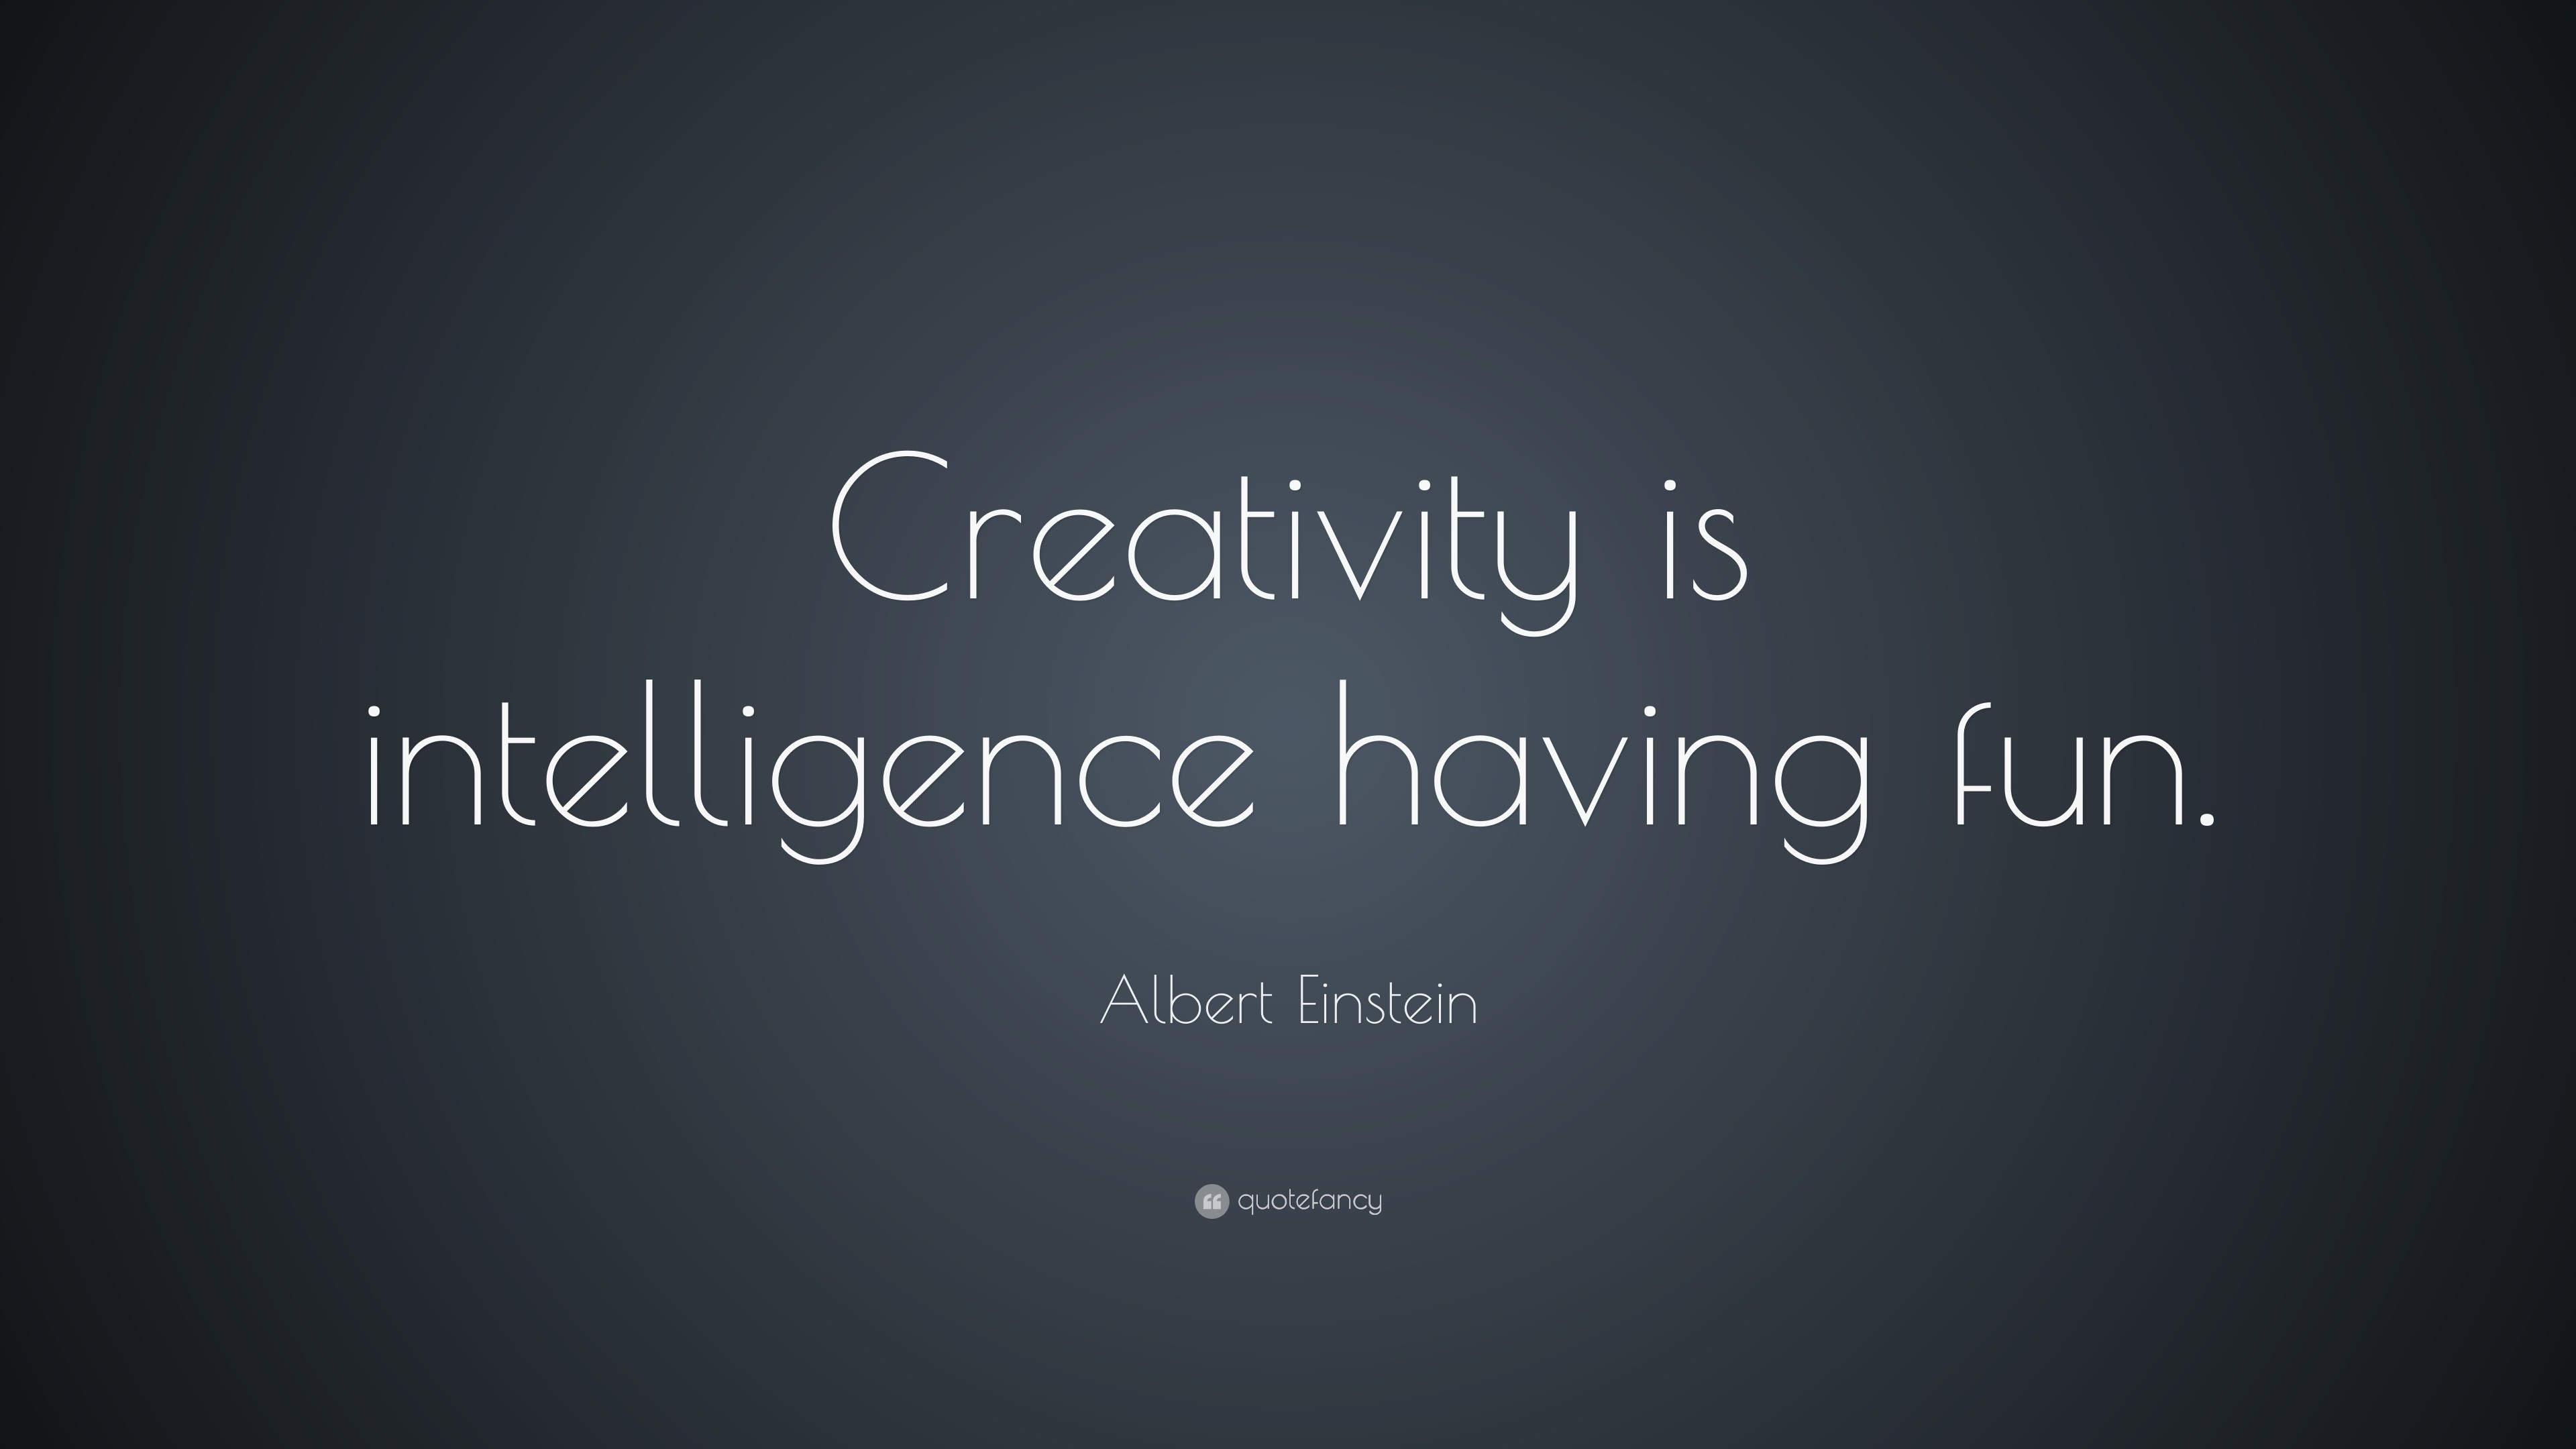 3840x2160 Albert Einstein Quote: “Creativity is intelligence having fun.”